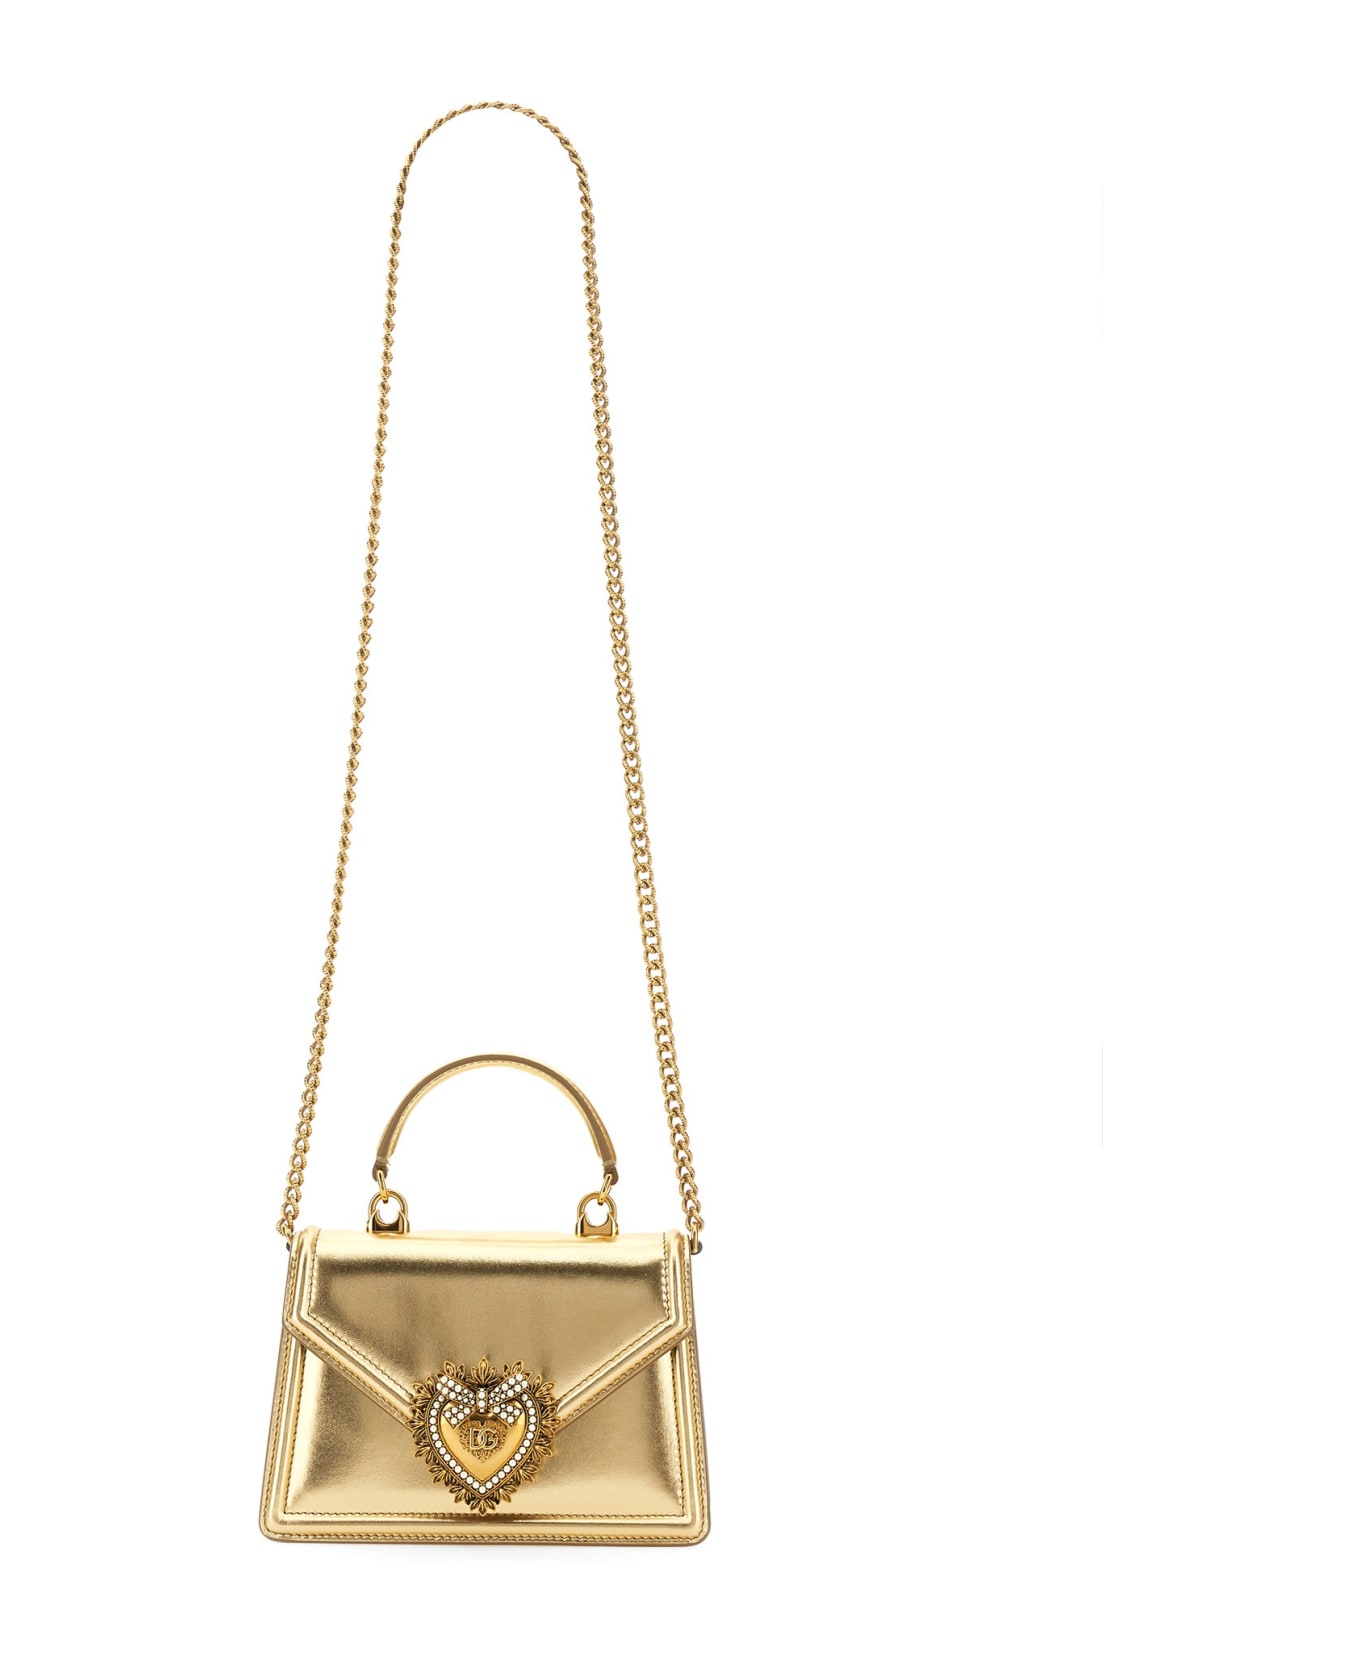 Dolce & Gabbana Devotion Handbag - Gold